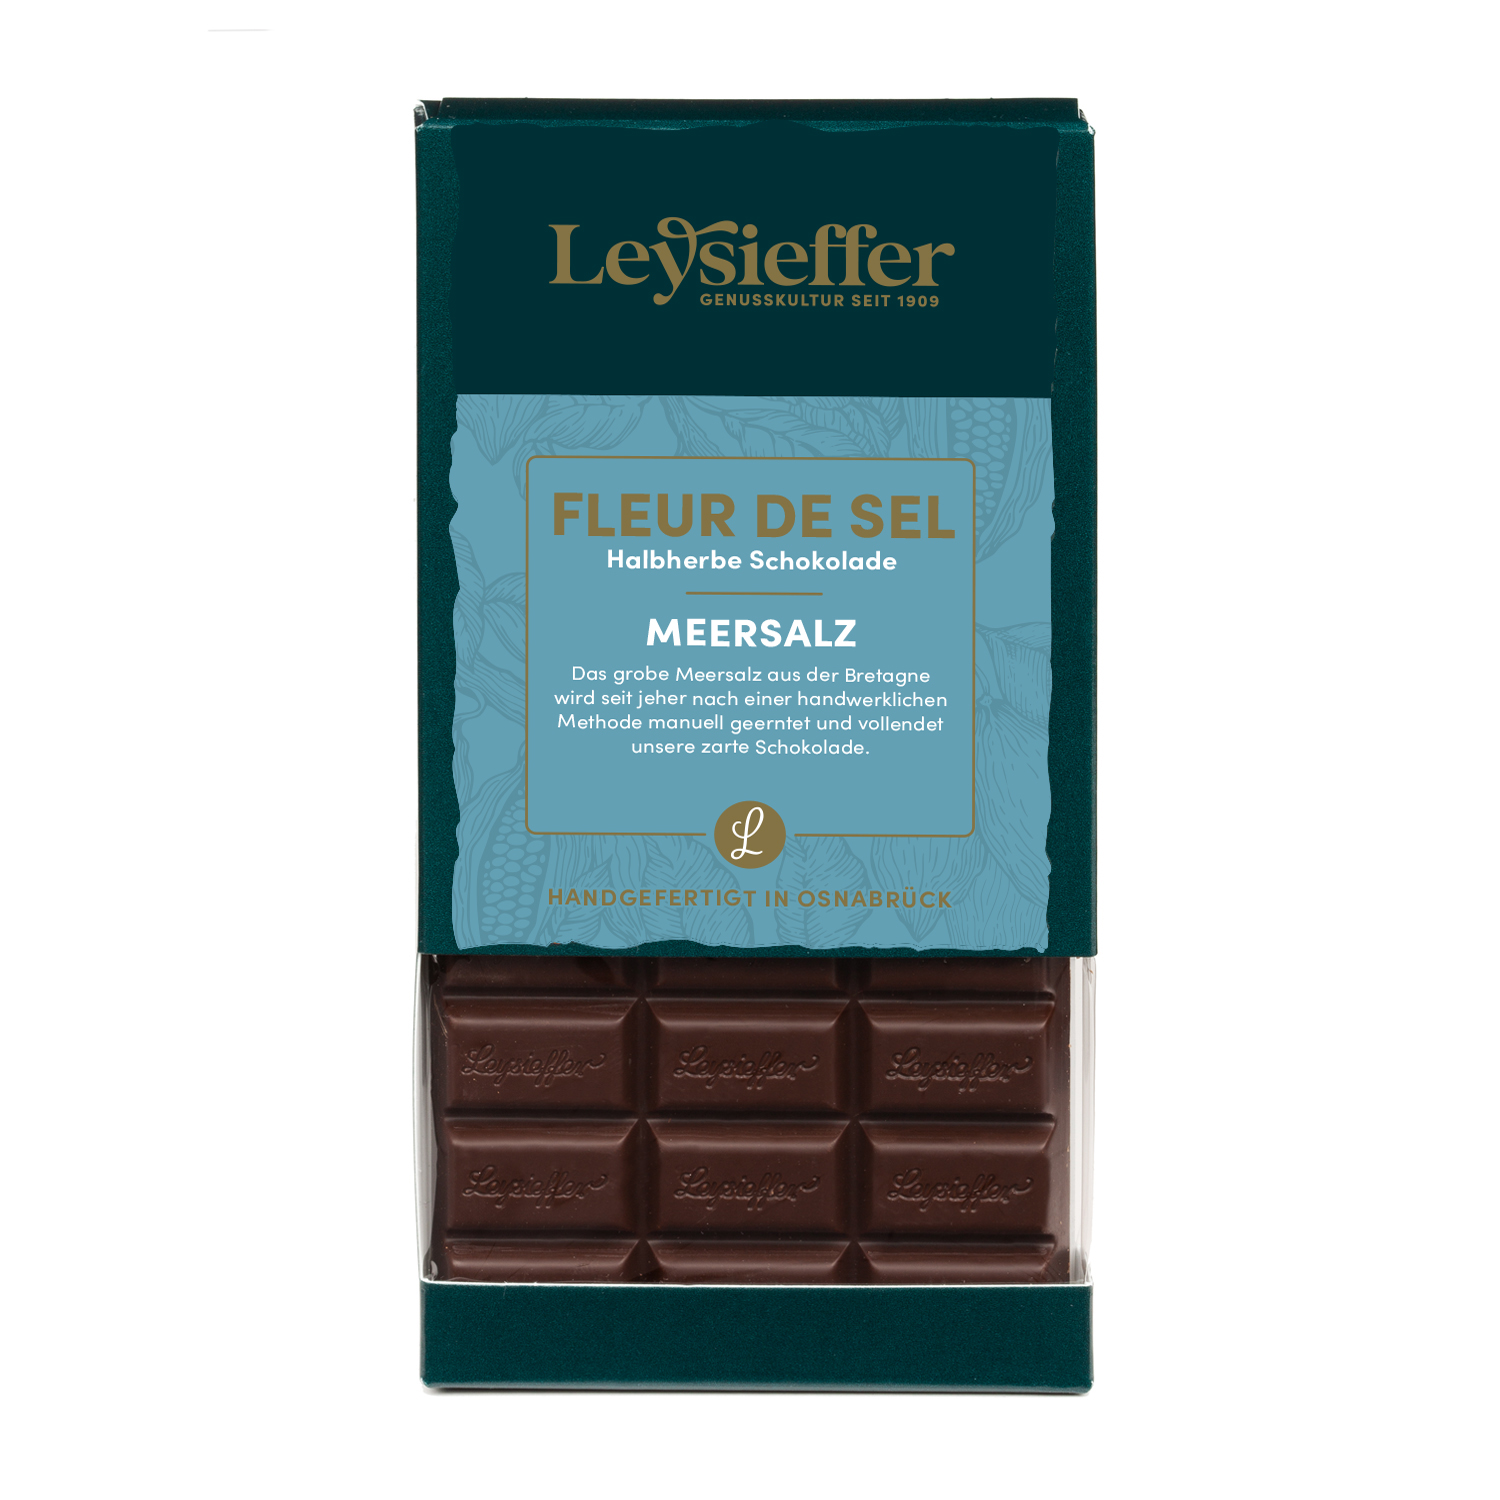 Halbherbe Schokolade mit Meersalz aus der Bretagne